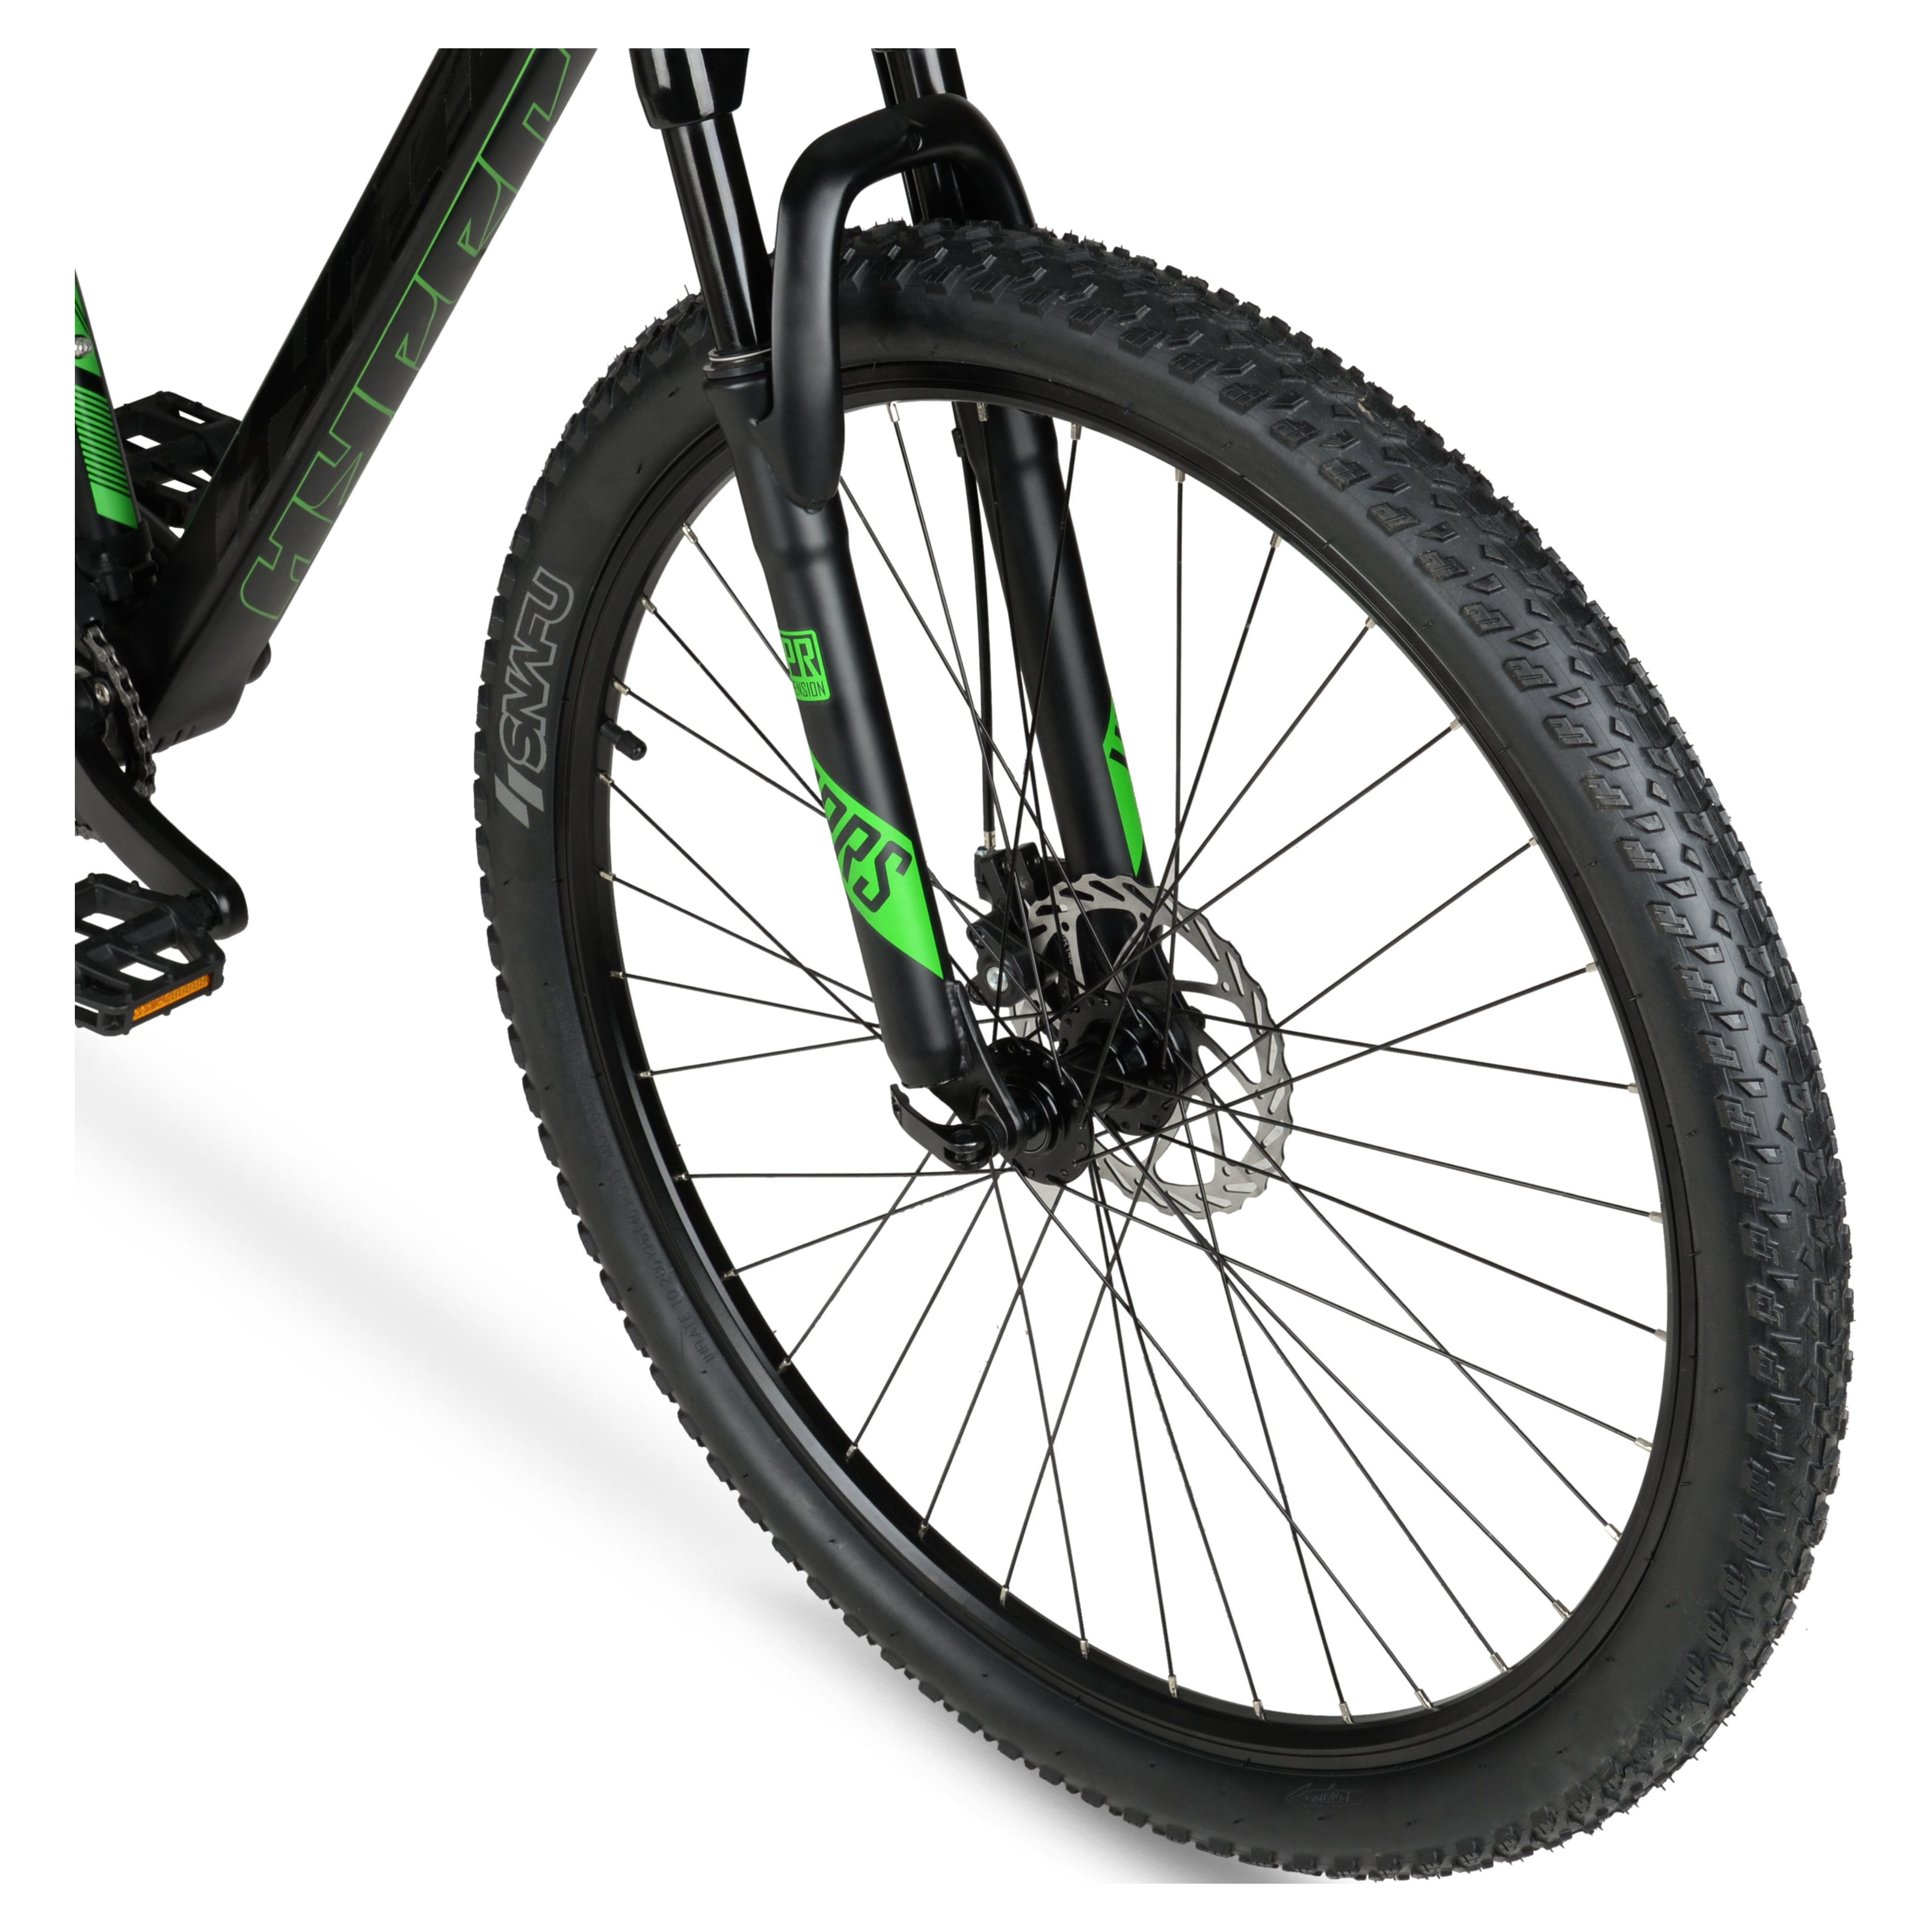 Hyper 29" Carbon Fiber Men's Mountain Bike, Black/Green - image 10 of 12